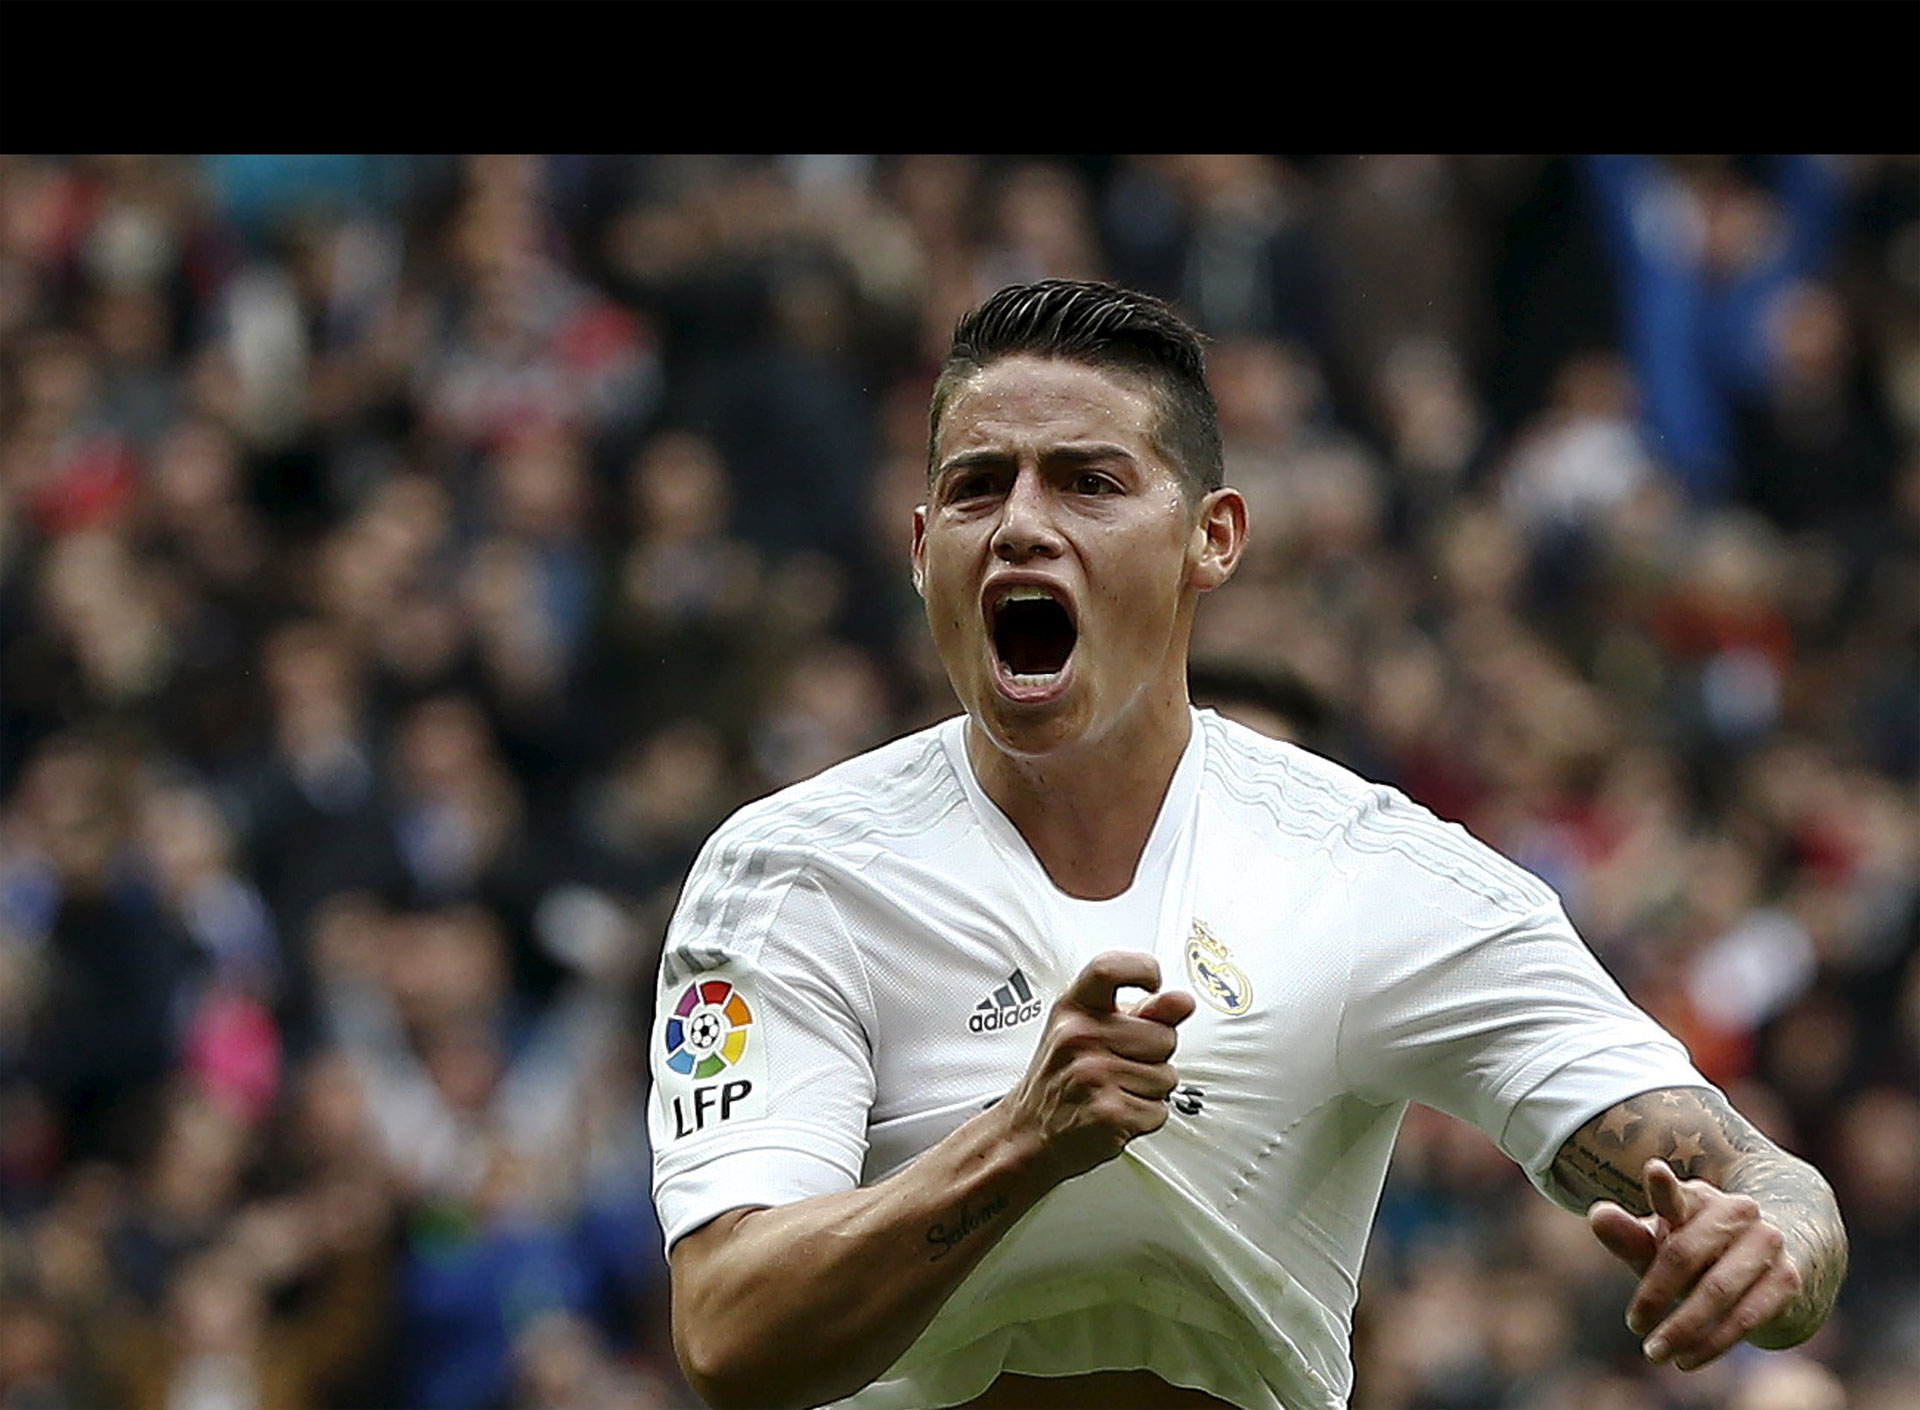 El jugador del Real Madrid desoyó a los agentes de policía que le indicaban que debía detenerse